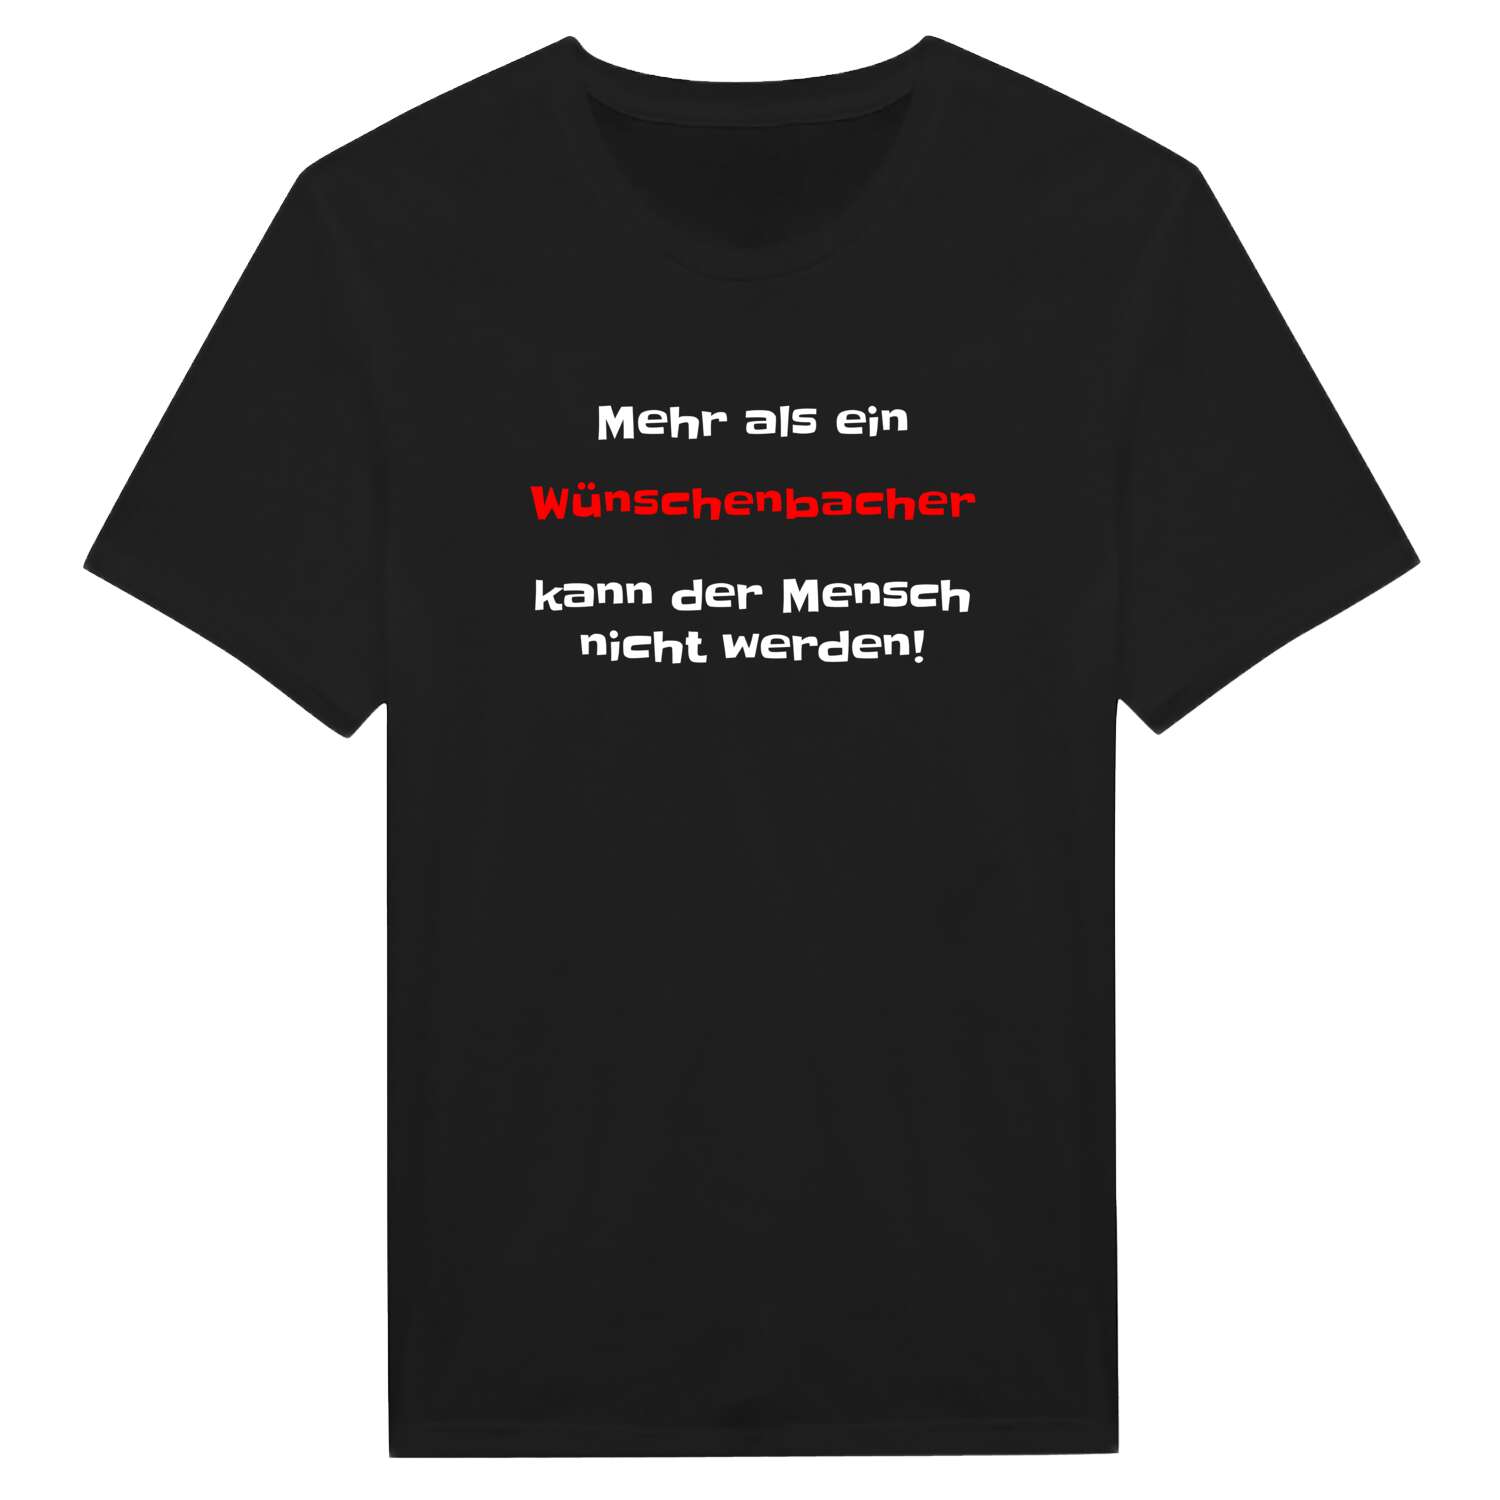 Wünschenbach T-Shirt »Mehr als ein«